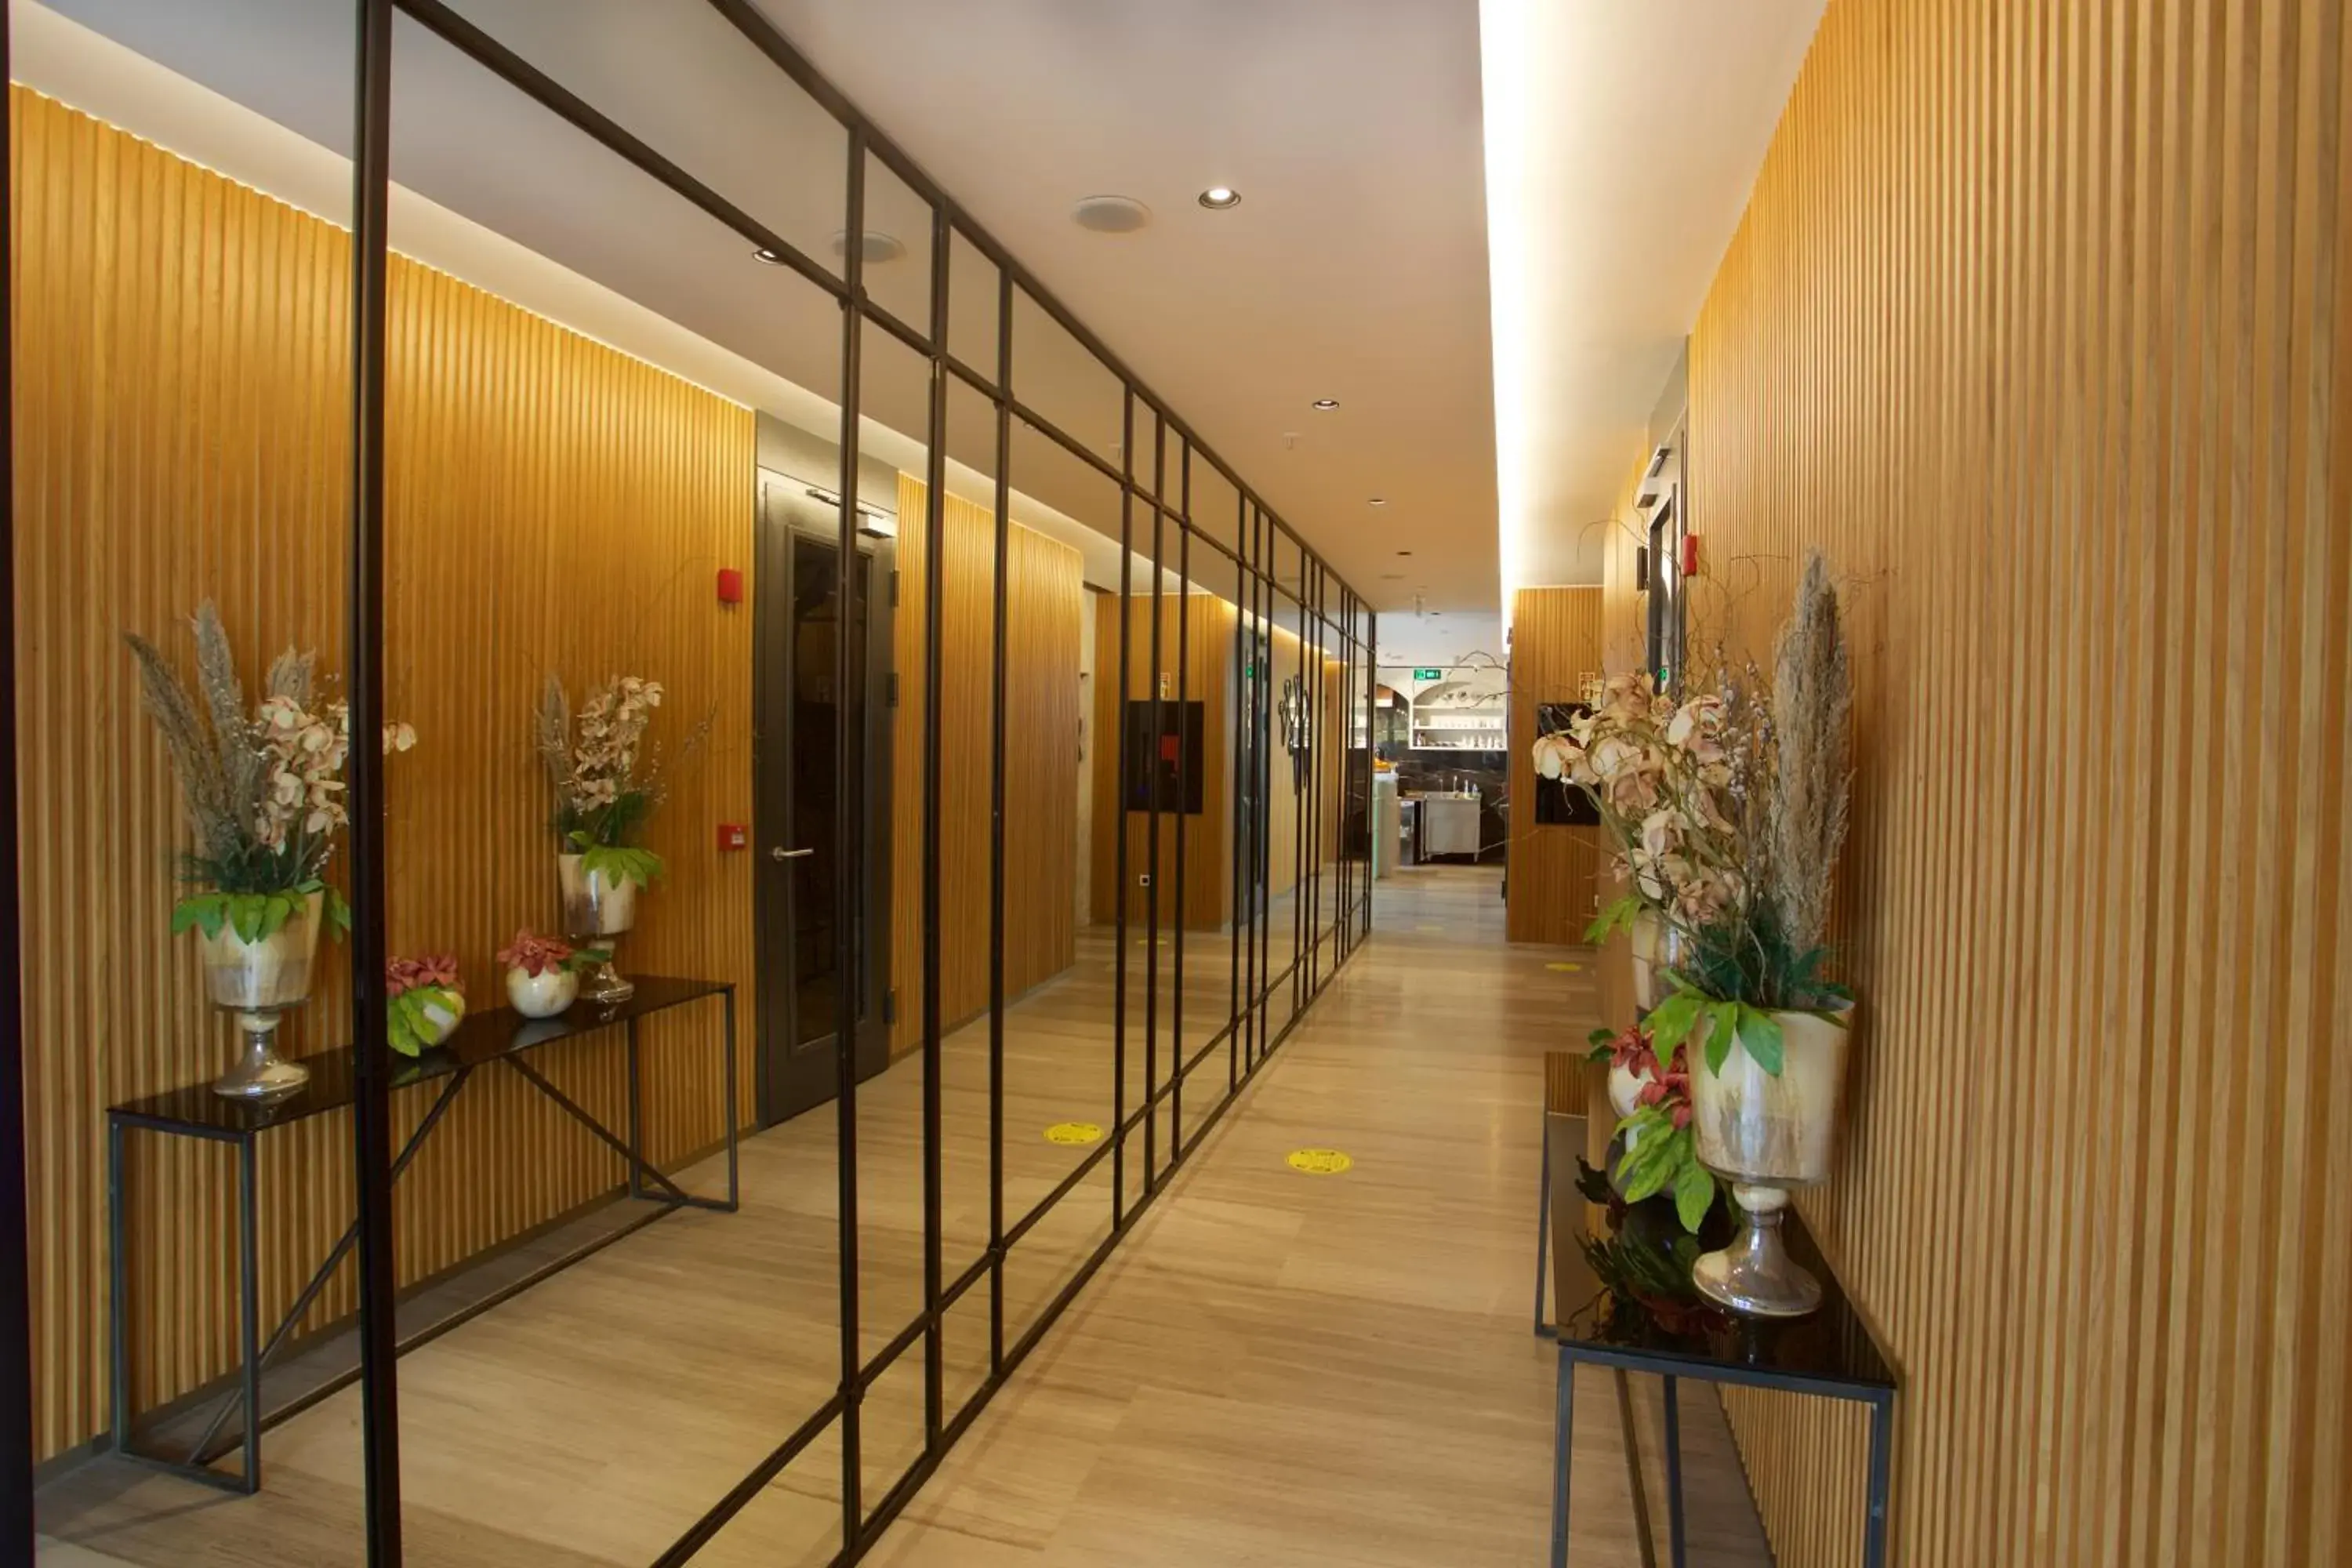 Floor plan in Dosso Dossi Hotels Yenikapı